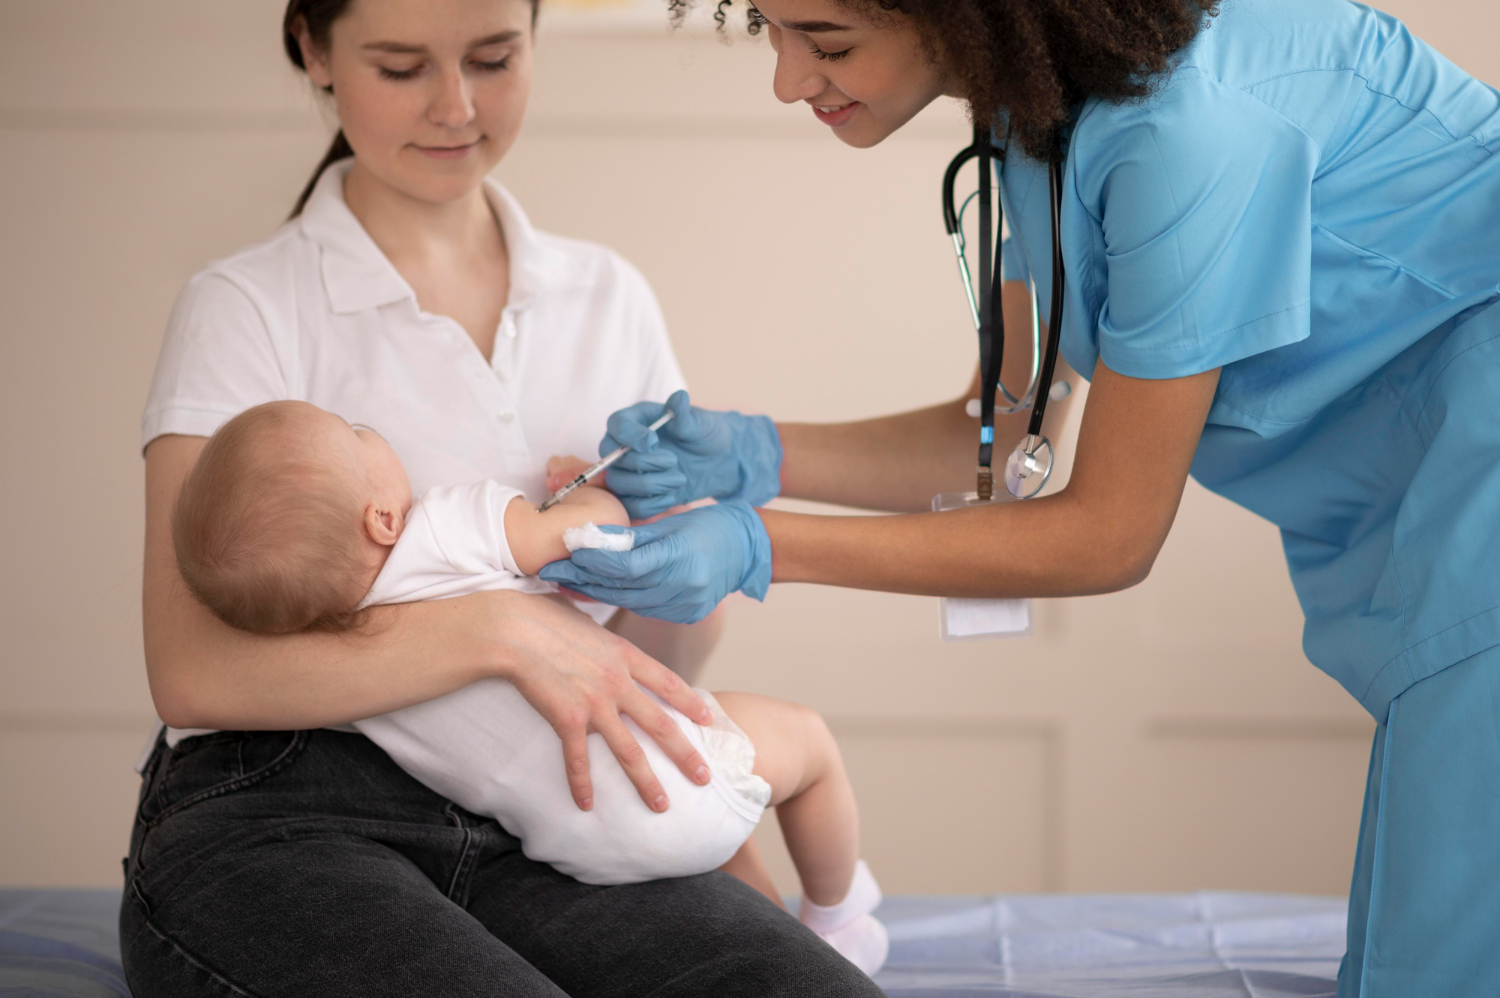 Bebê recebe vacina da covid no braço